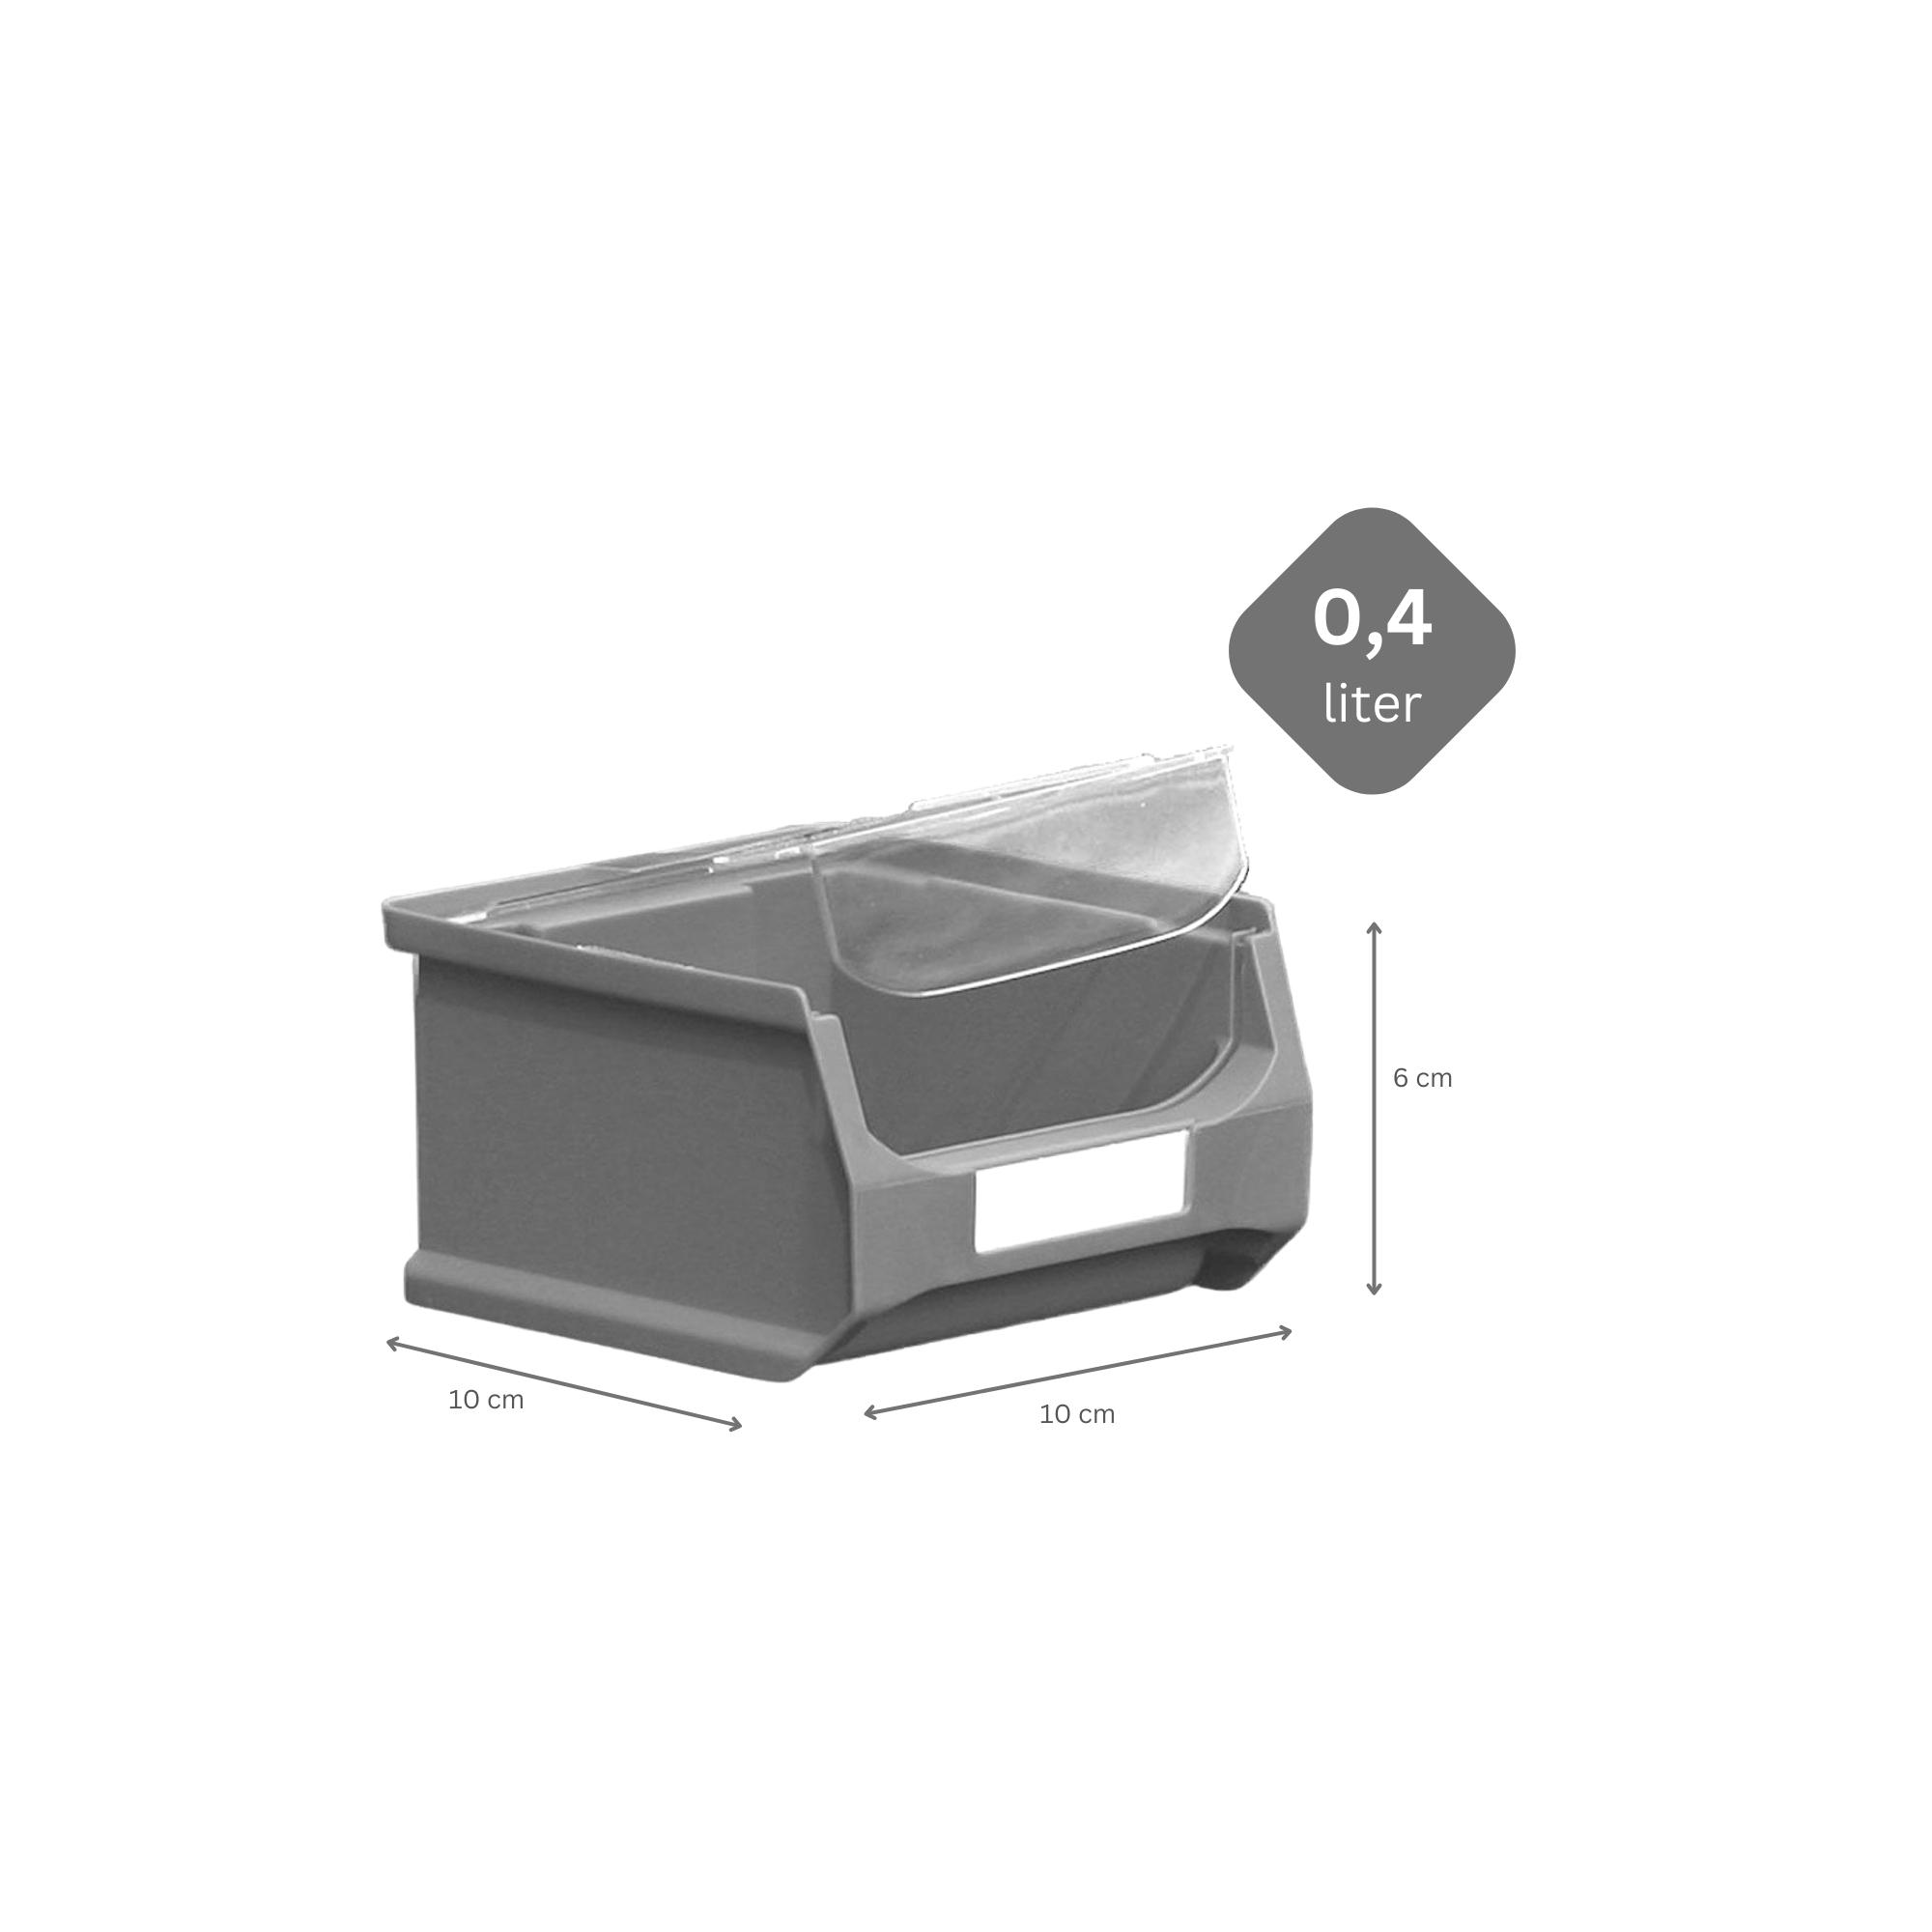 Wandleiste mit 6x Graue Sichtlagerbox 1.0 mit Abdeckung | HxBxT 6,1x60,5x10cm | Wandhalterung, Kleinteileaufbewahrung, Sortimentsboxhalterung